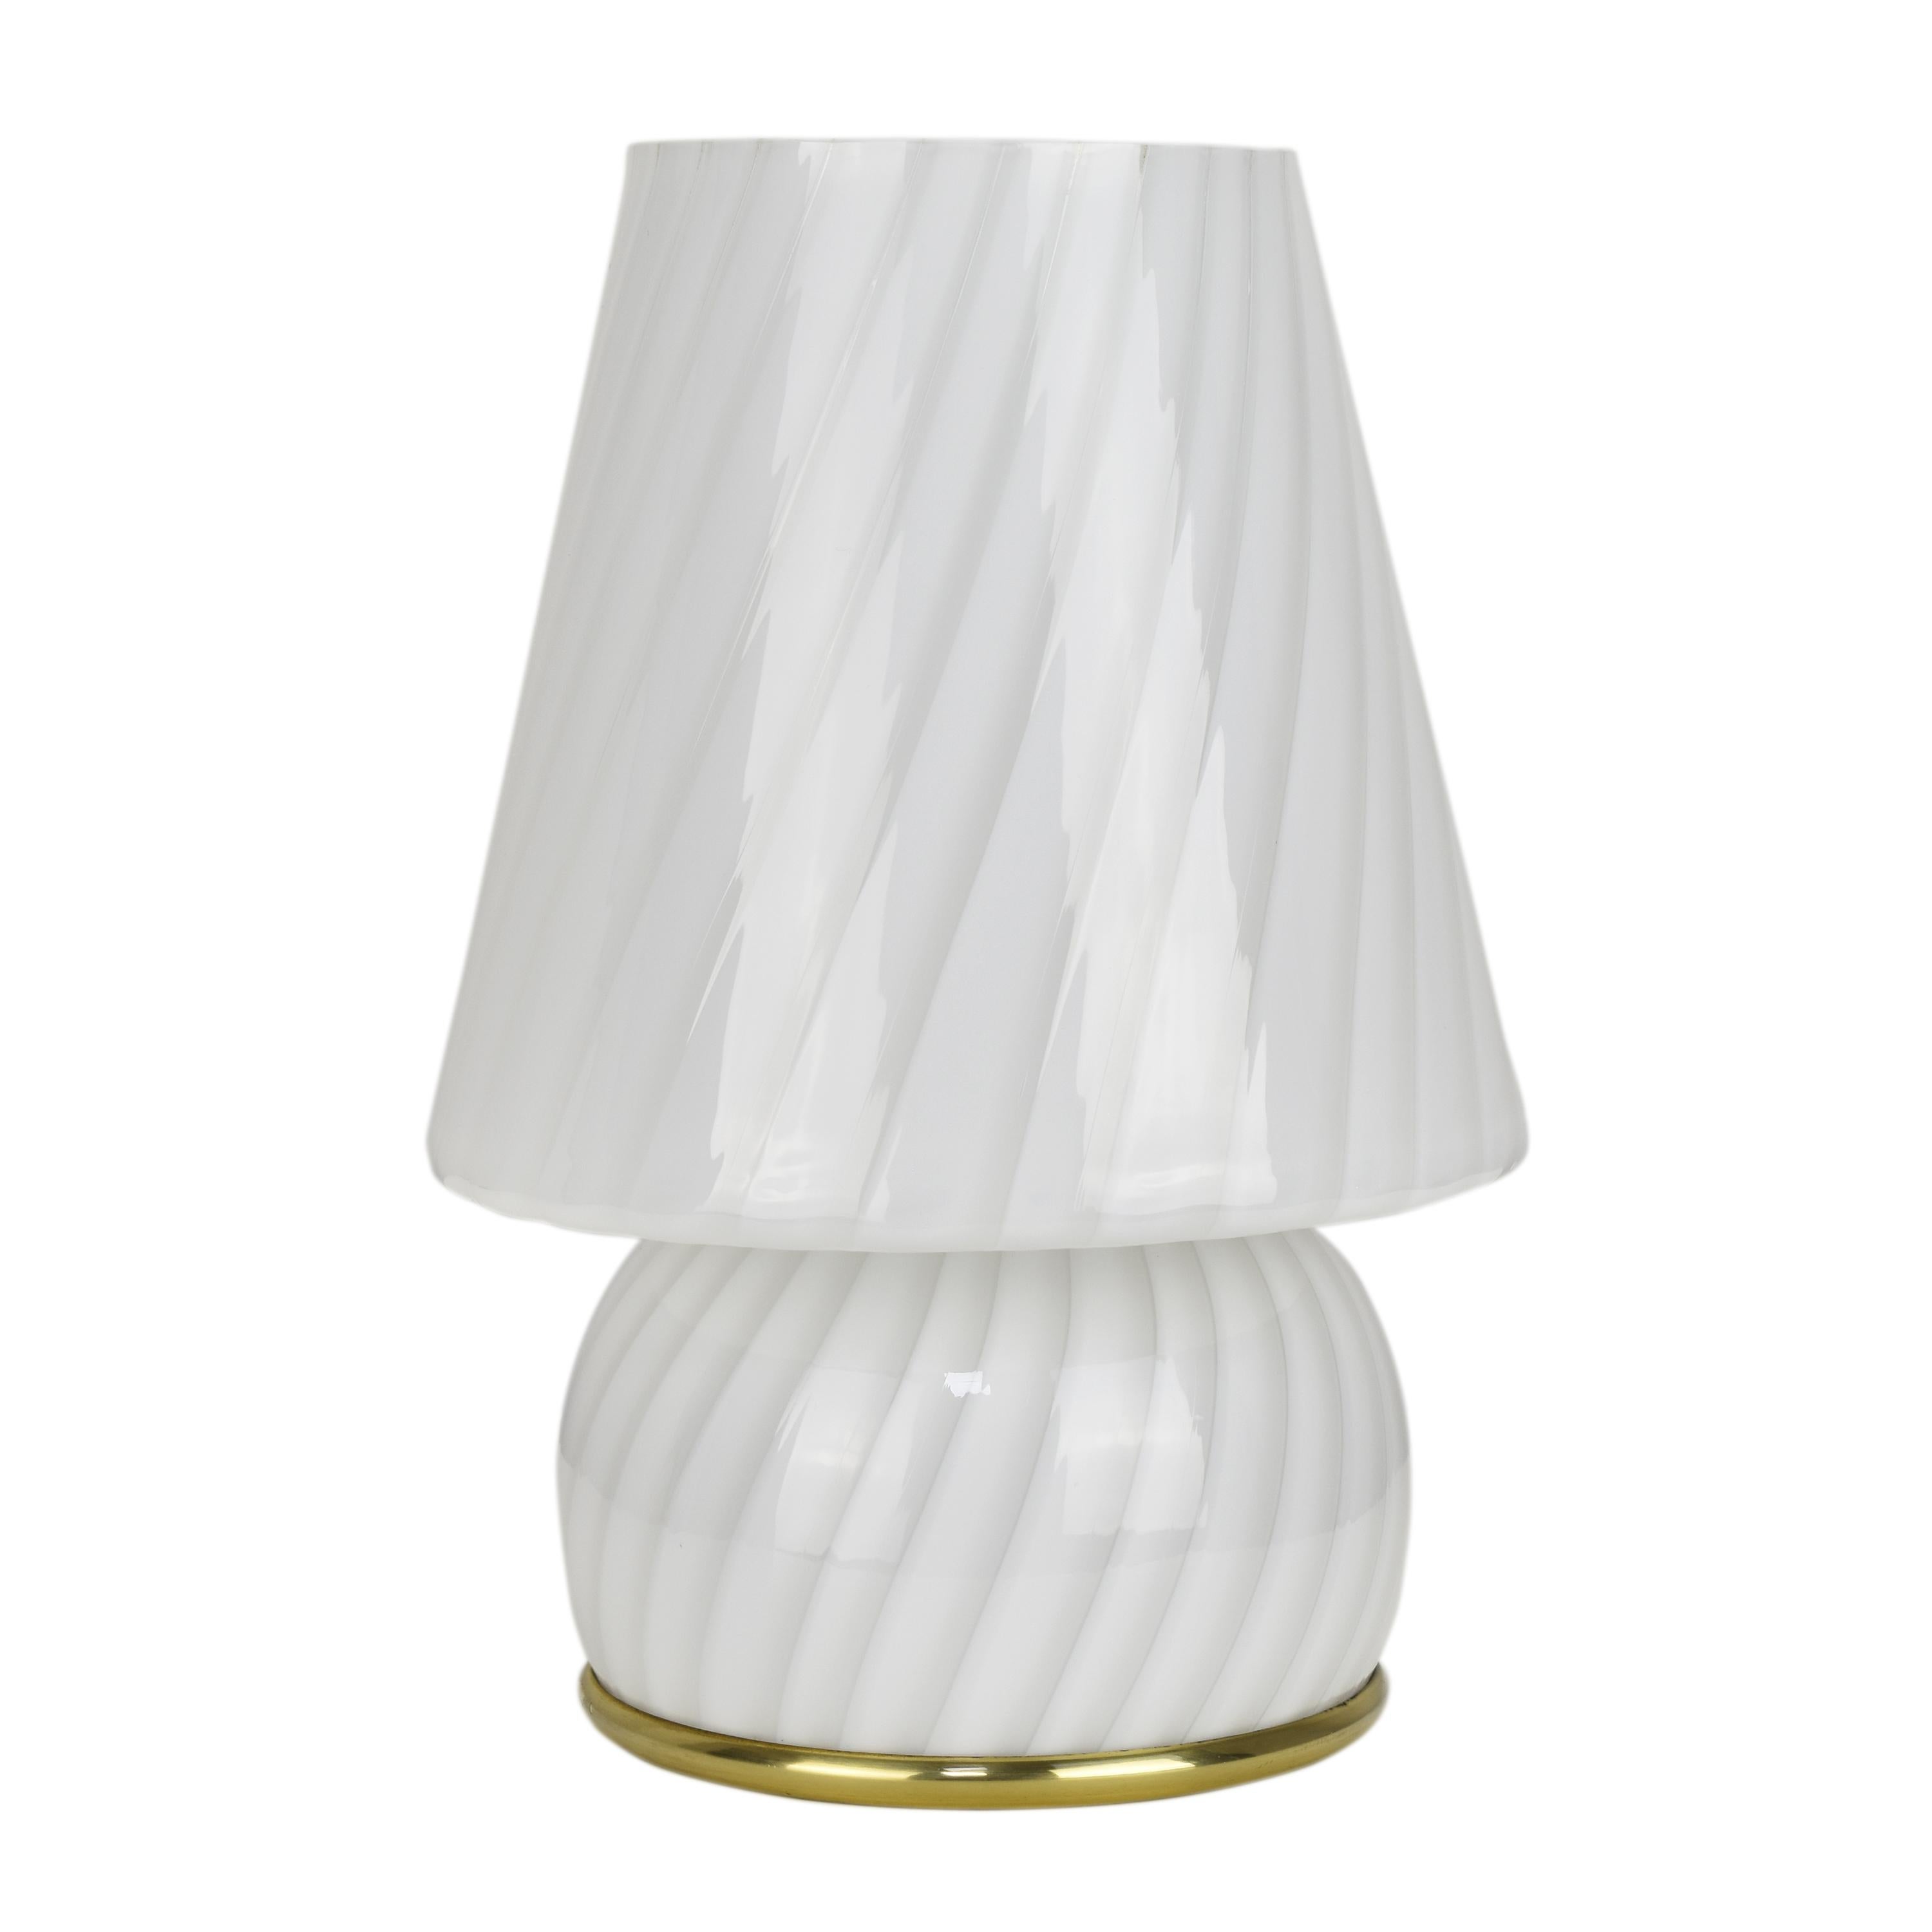 Lampe de table vintage en verre d'art de Murano, en forme de champignon, avec un tourbillon blanc, une pièce magnifique et artisanale du design d'éclairage, fabriquée dans les années 1960 par la société italienne Artemide. 
La lampe présente une